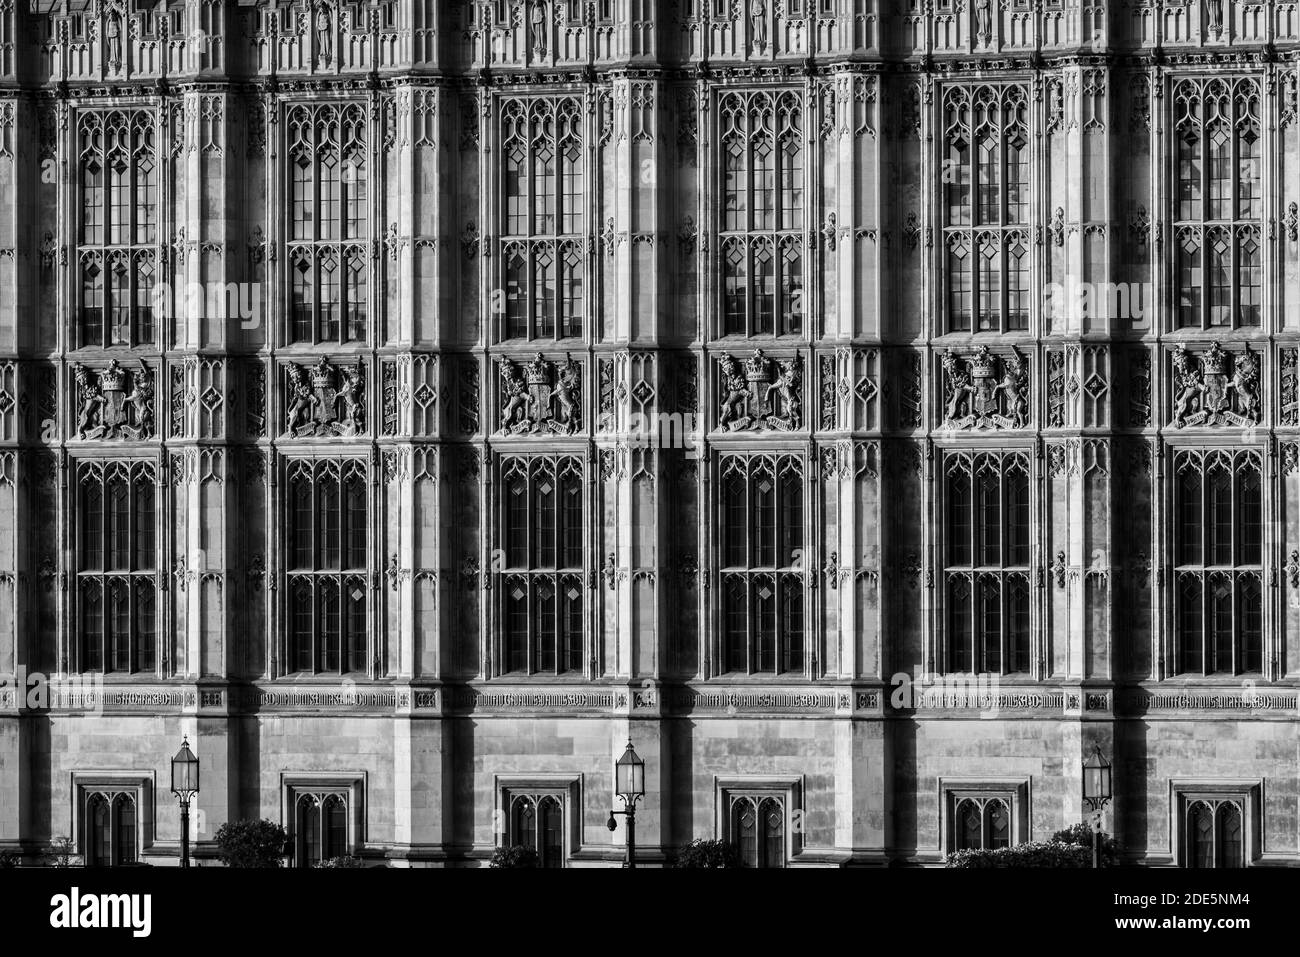 Les chambres du Parlement noir et blanc, le bâtiment emblématique de Londres et site touristique de référence lors du confinement du coronavirus Covid-19 en Angleterre, au Royaume-Uni Banque D'Images